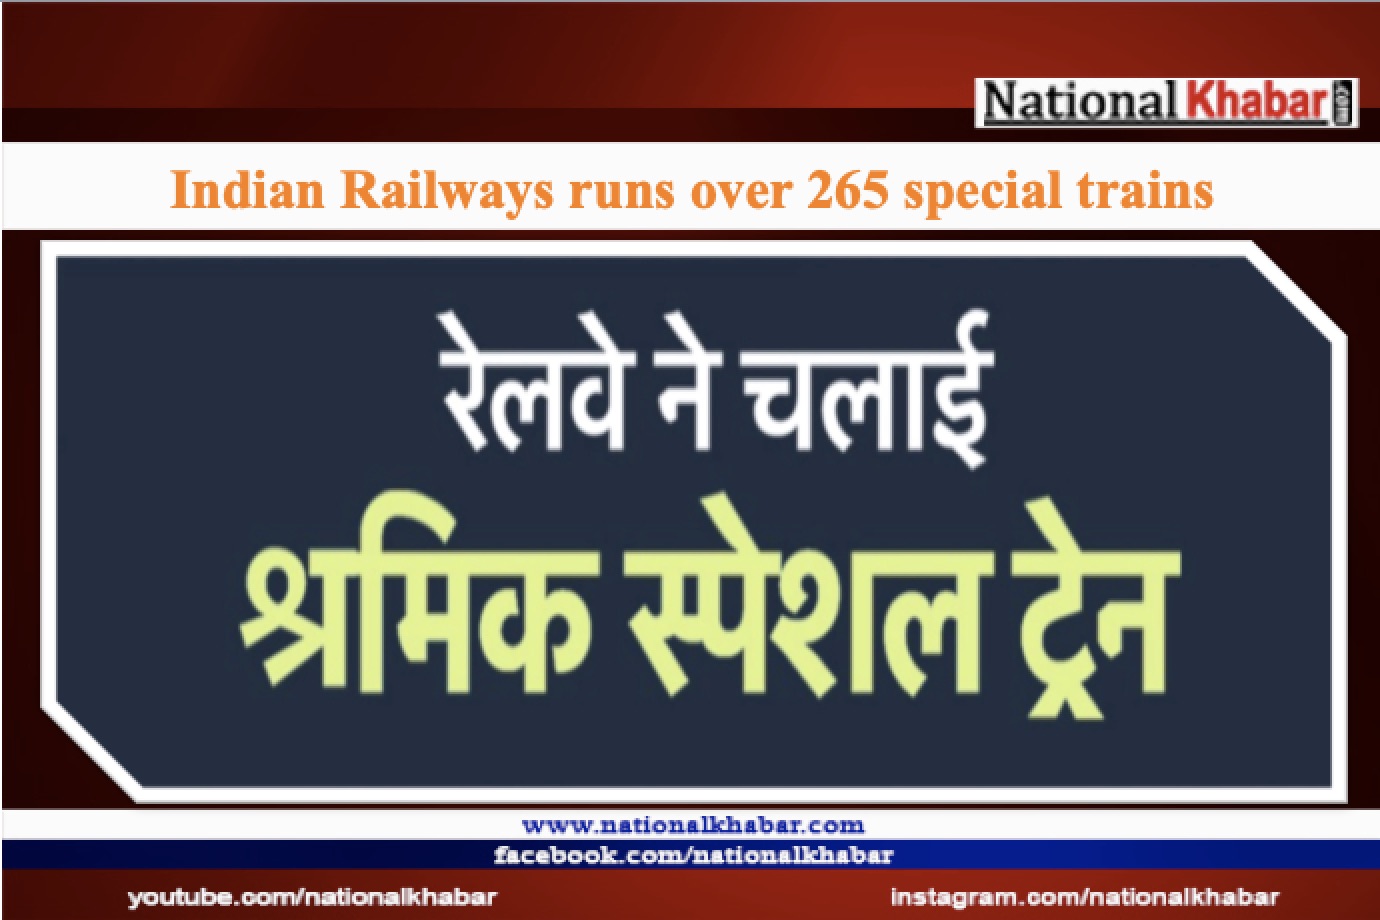 भारतीय रेलवे ने श्रमिकों के लिए 265 से अधिक स्पेशल गाड़ियां चलाएं